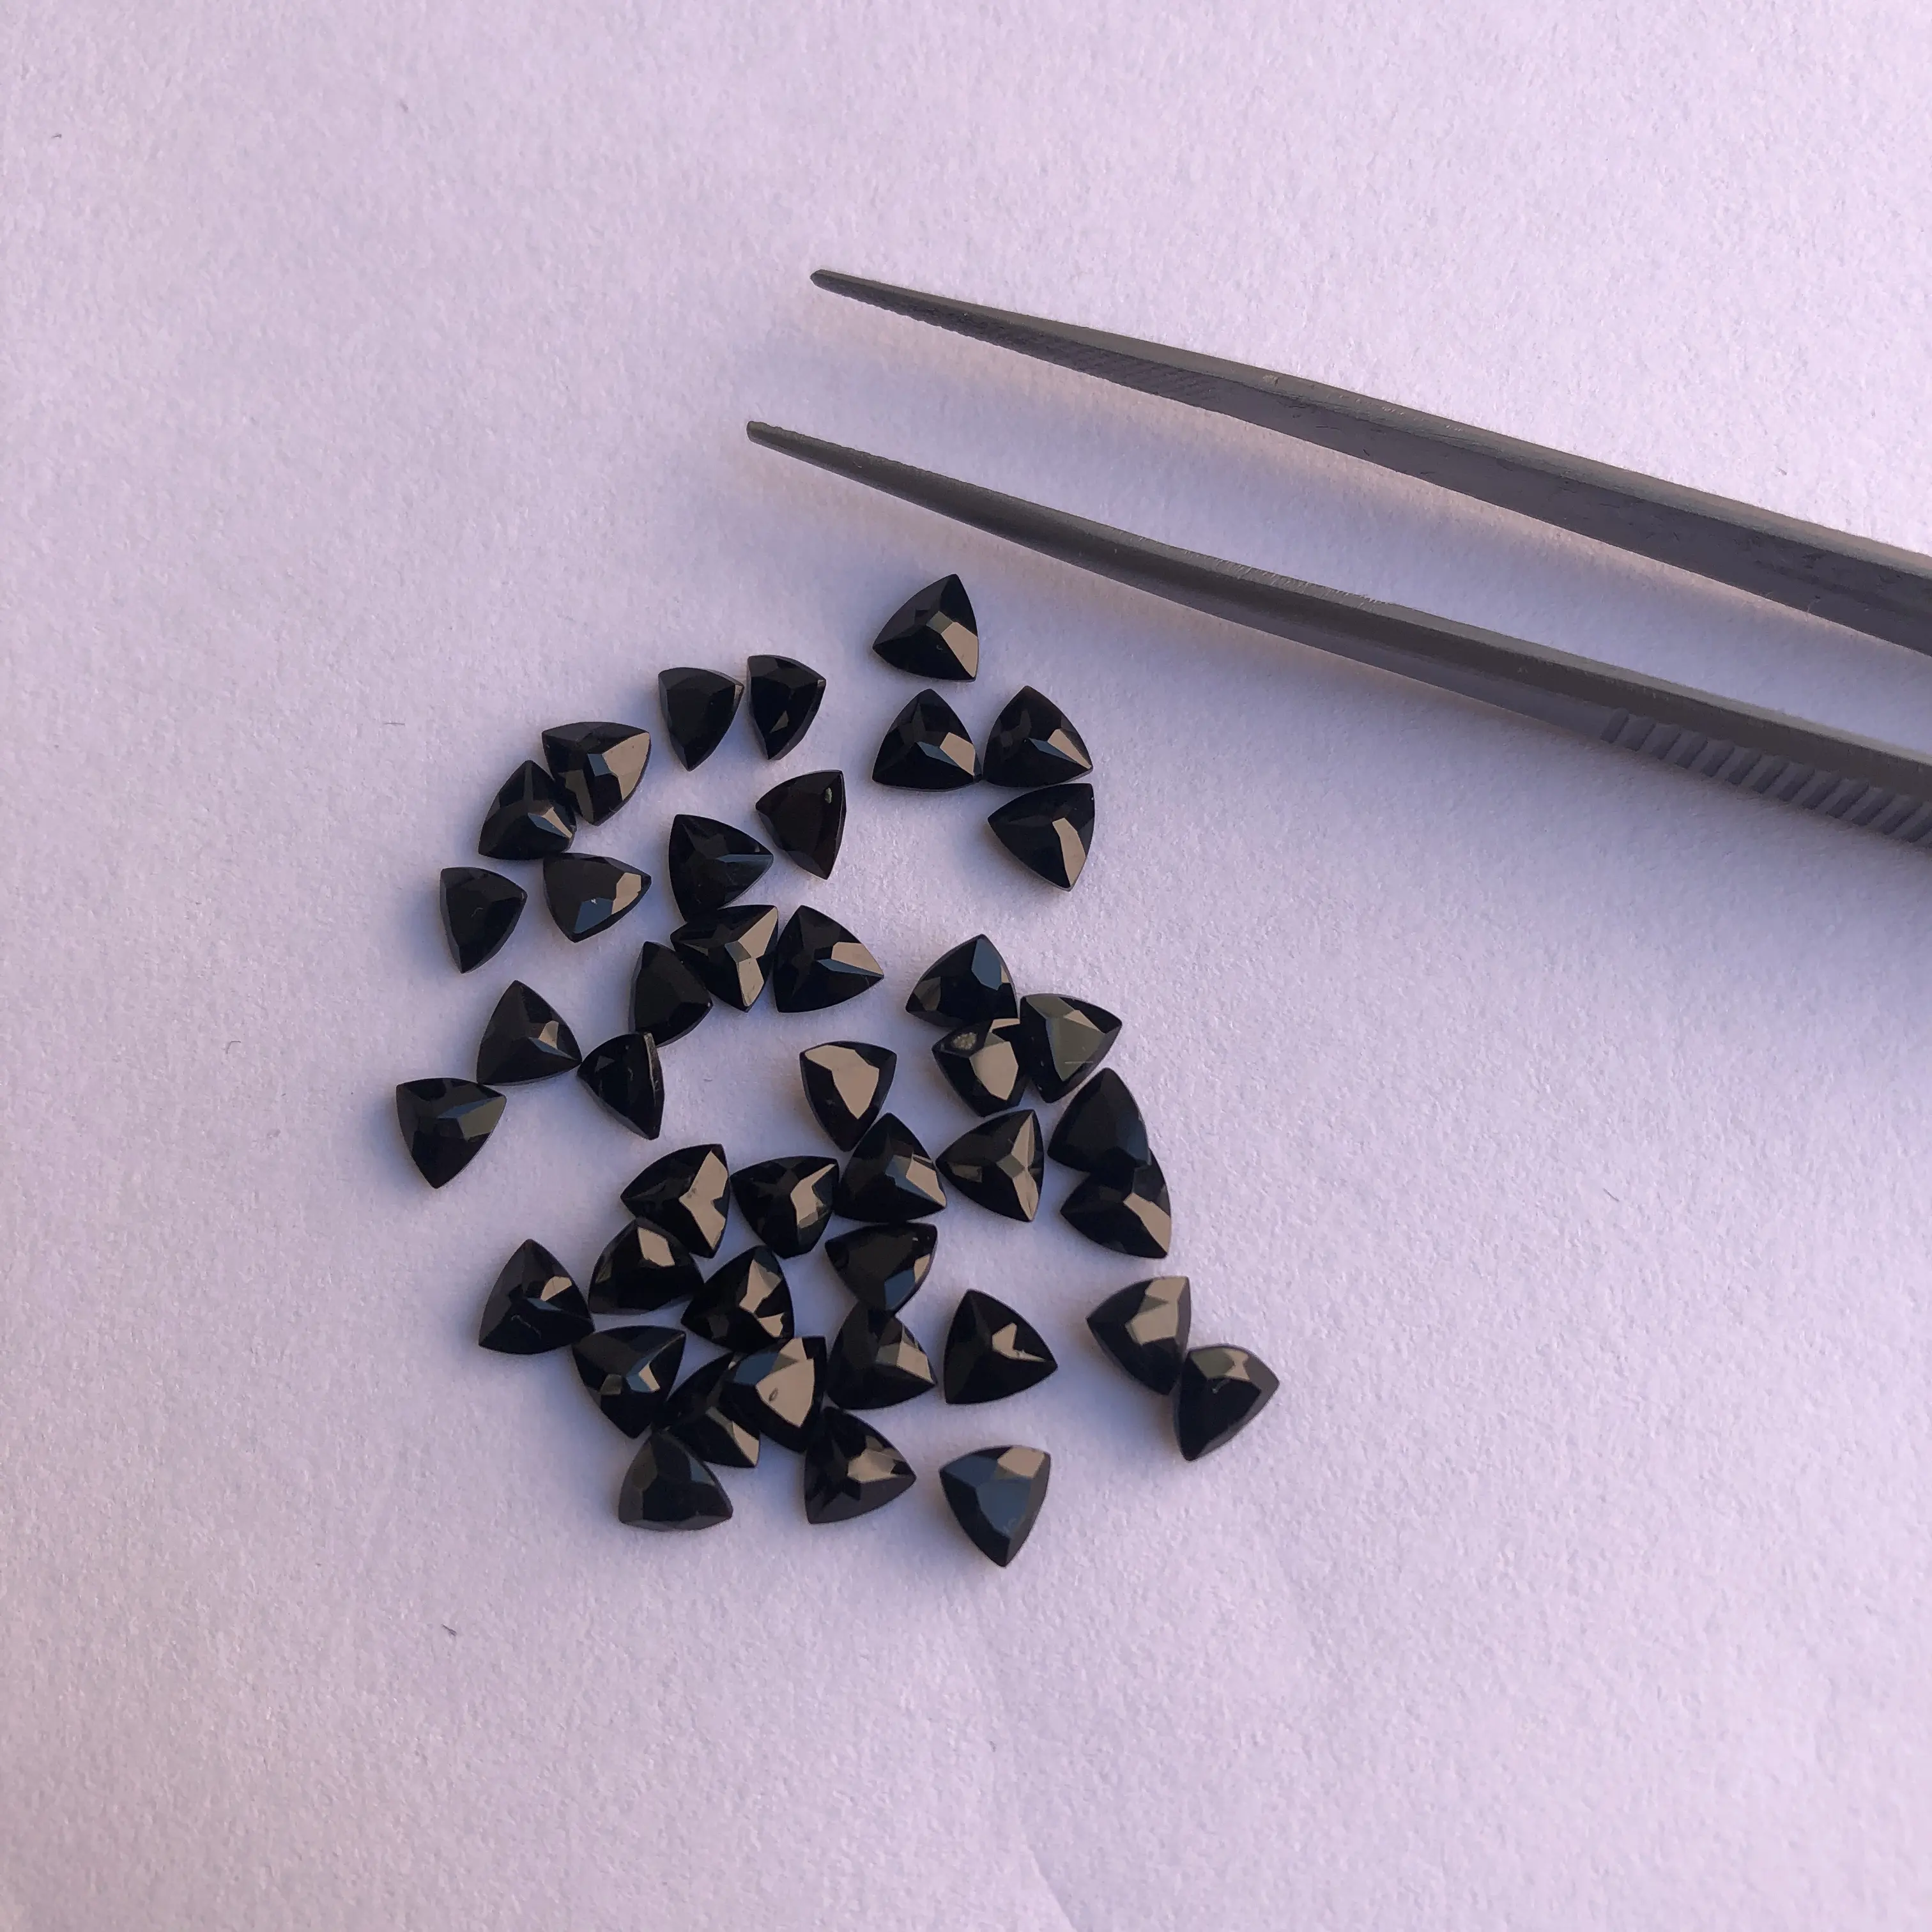 5mm tự nhiên màu đen Onyx mặt nghìn tỷ cắt hiệu chuẩn đá quý giá bán buôn Loose Stones đối với trang sức thiết lập thường xuyên bán